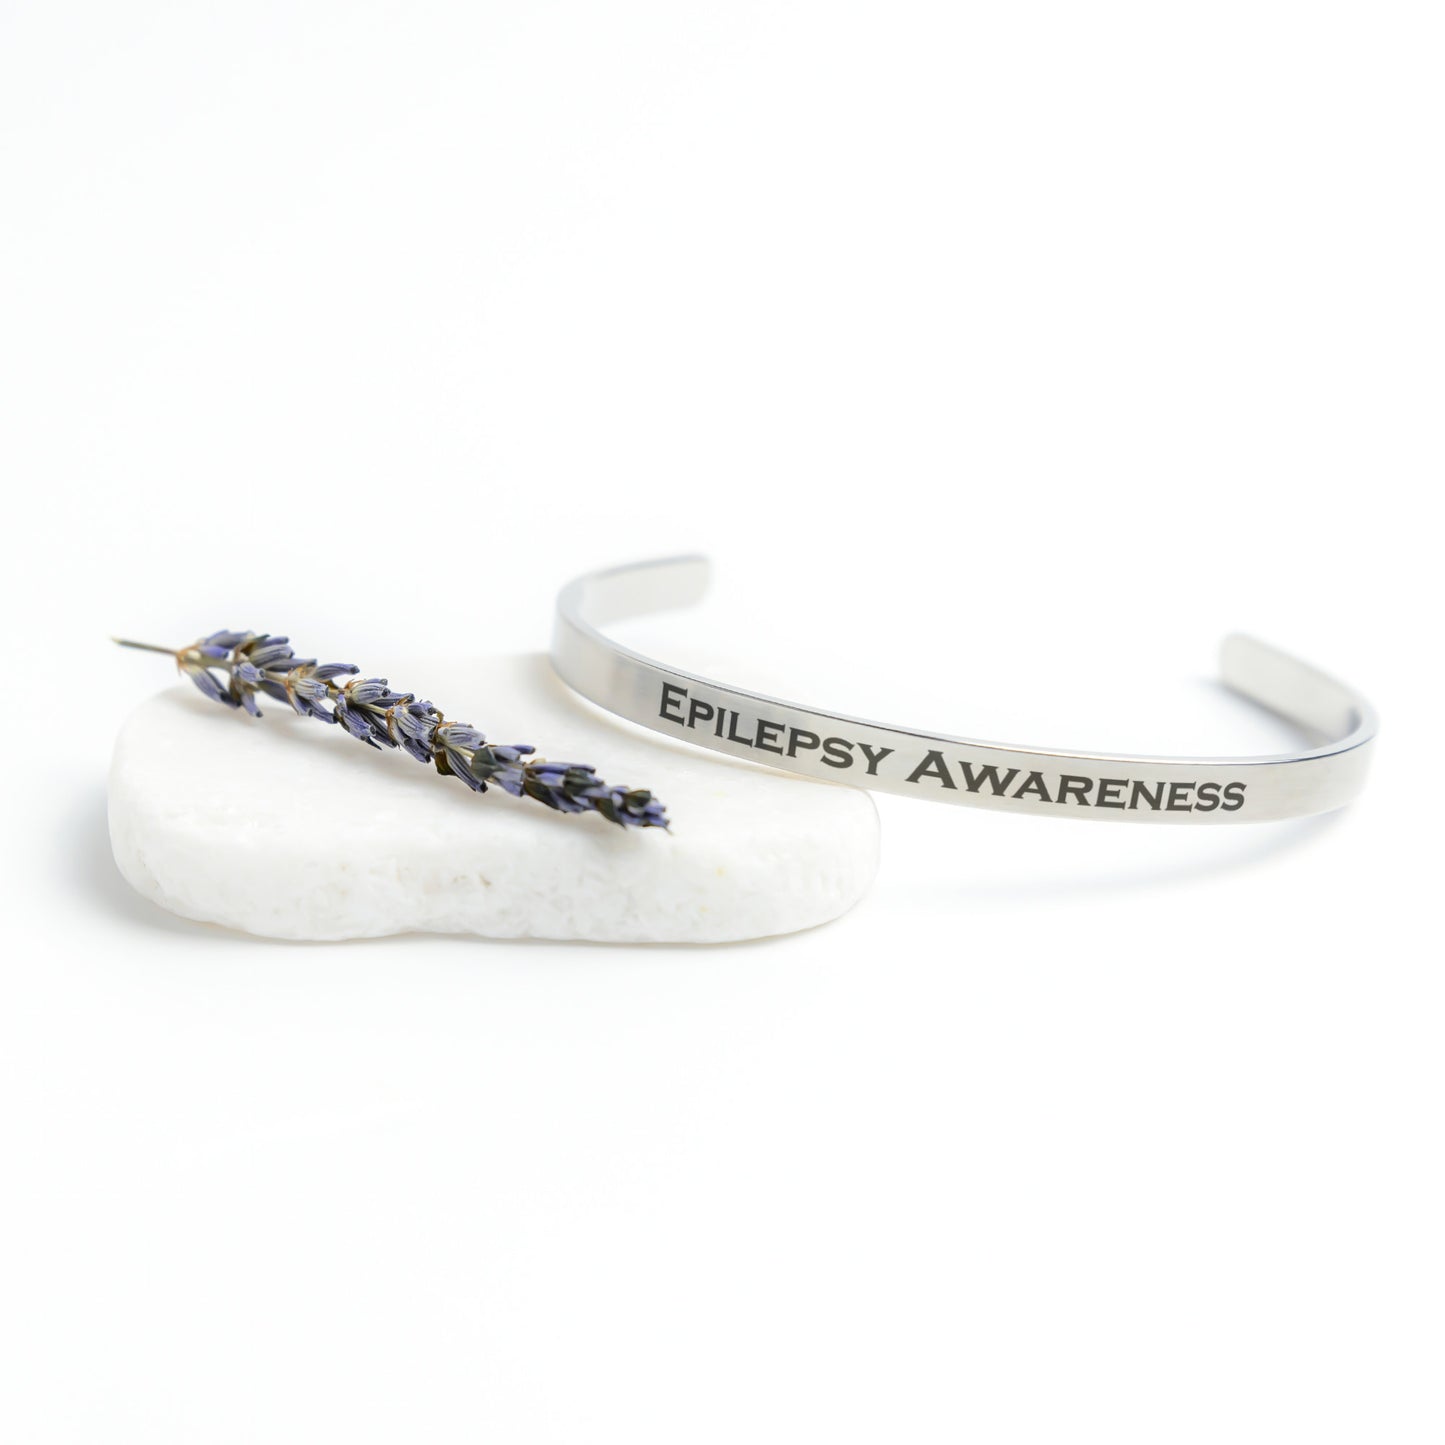 Personalized Epilepsy Awareness Cuff Bracelet